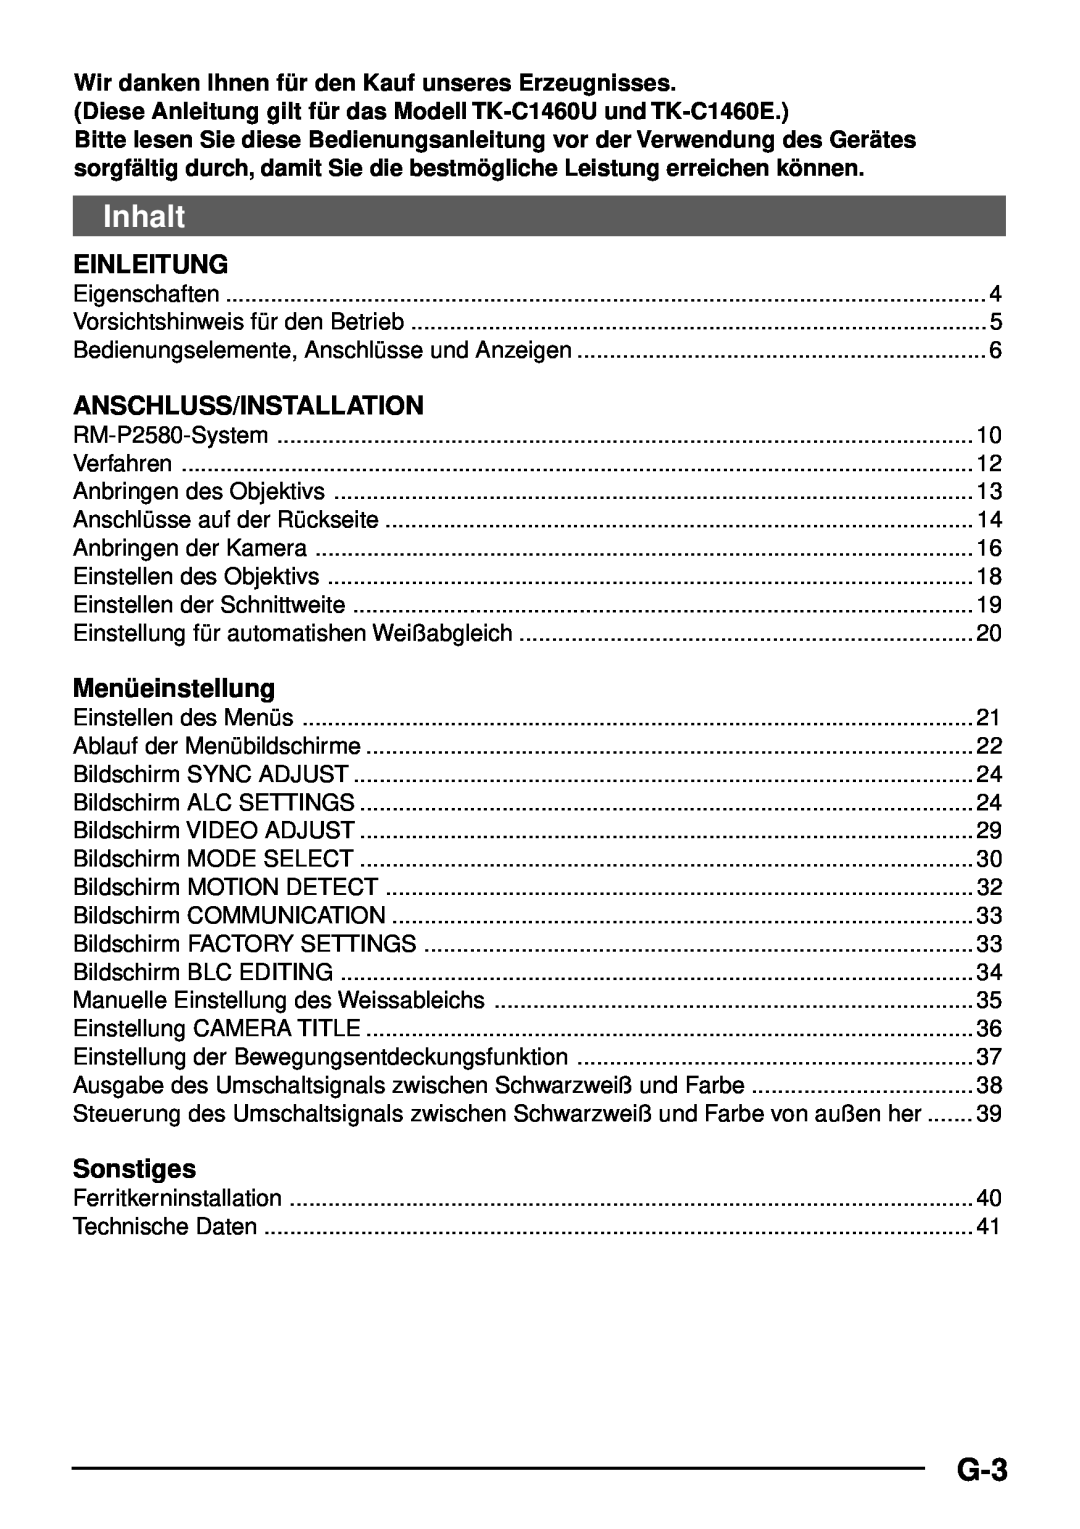 JVC TK-C1460 manual Inhalt, Einleitung, Anschluss/Installation, Menüeinstellung, Sonstiges 